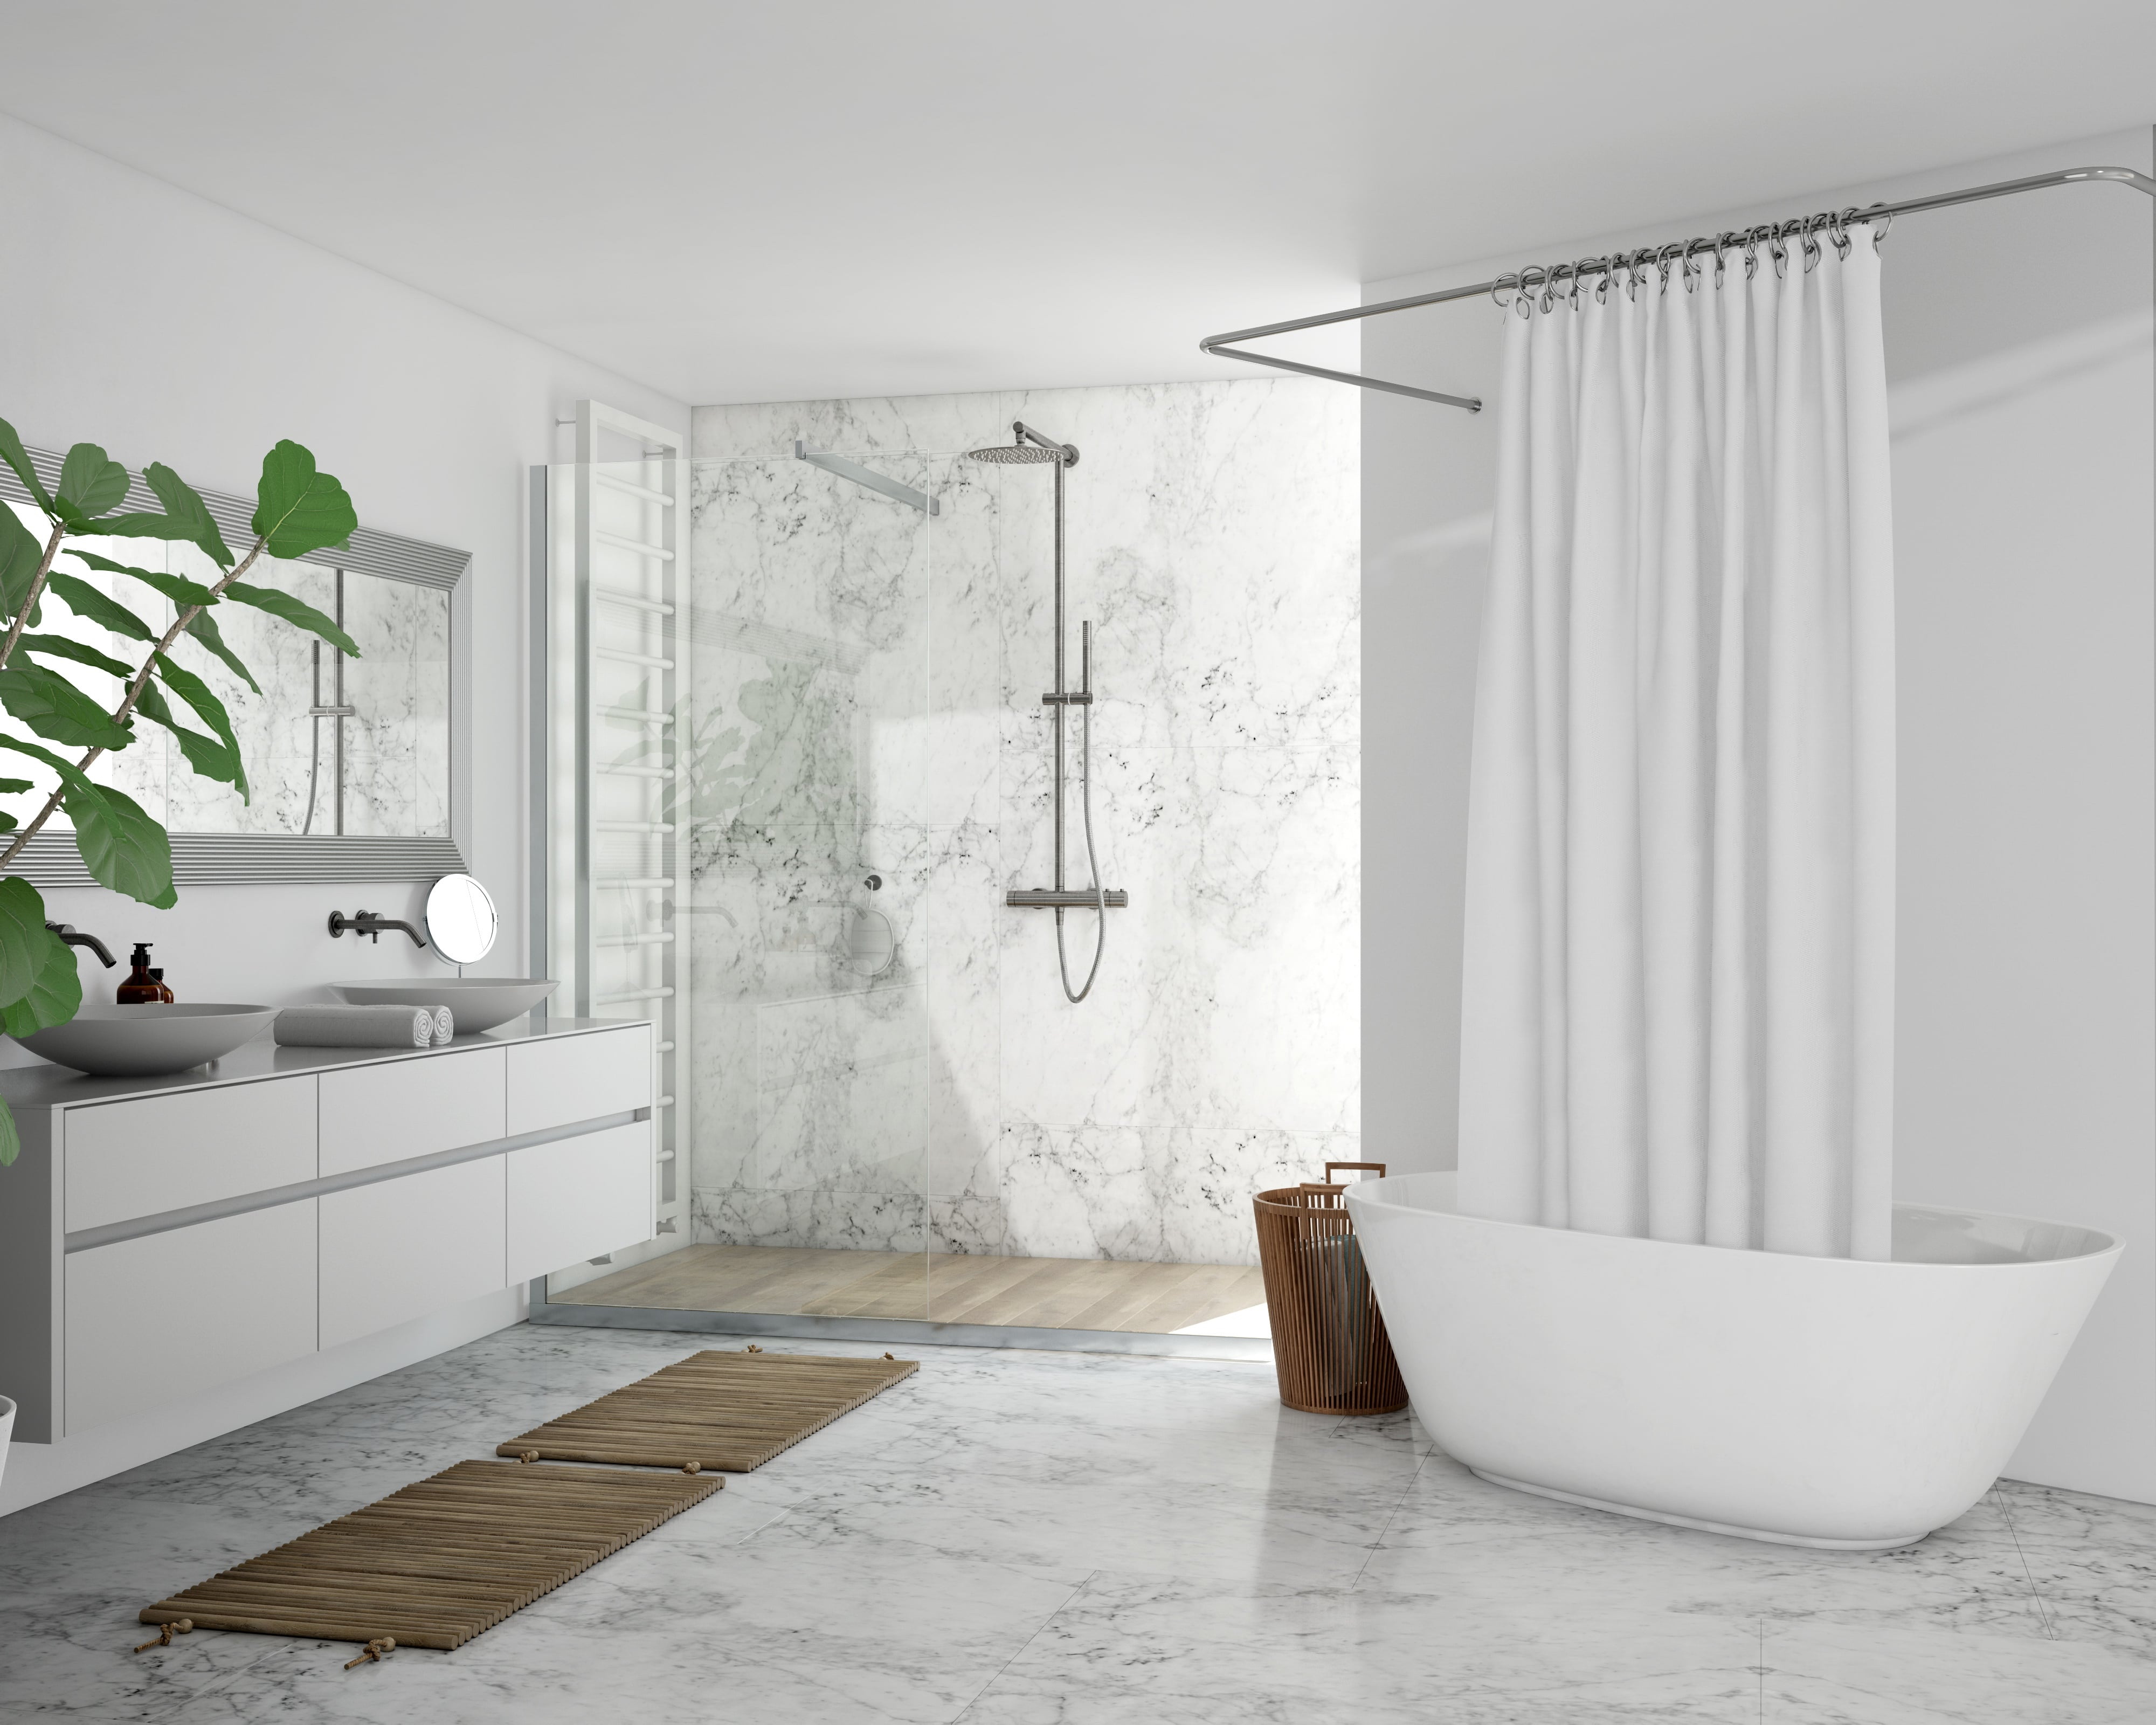 Làm mới phòng tắm của bạn với gạch ốp lát chất lượng tốt từ Đà Nẵng. Hình ảnh sẽ giúp bạn hiểu rõ hơn về màu sắc, kiểu dáng và thiết kế đa dạng để bạn chọn lựa dễ dàng.